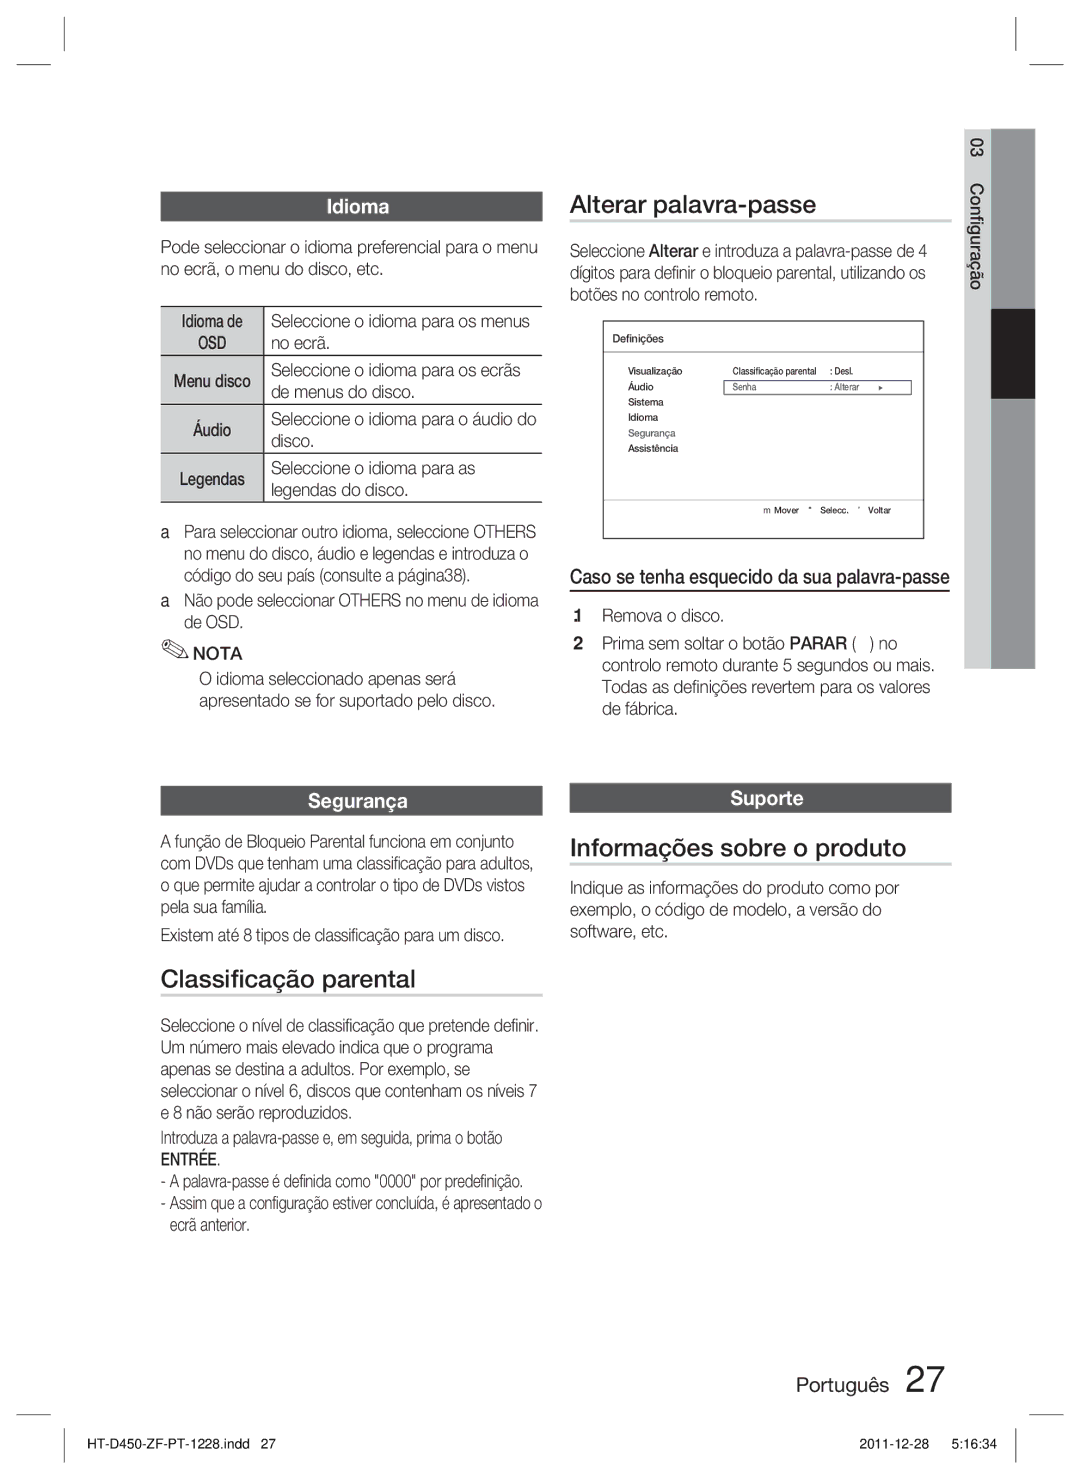 Samsung HT-D455/ZF manual Alterar palavra-passe, Classiﬁcação parental, Informações sobre o produto, Segurança, Suporte 